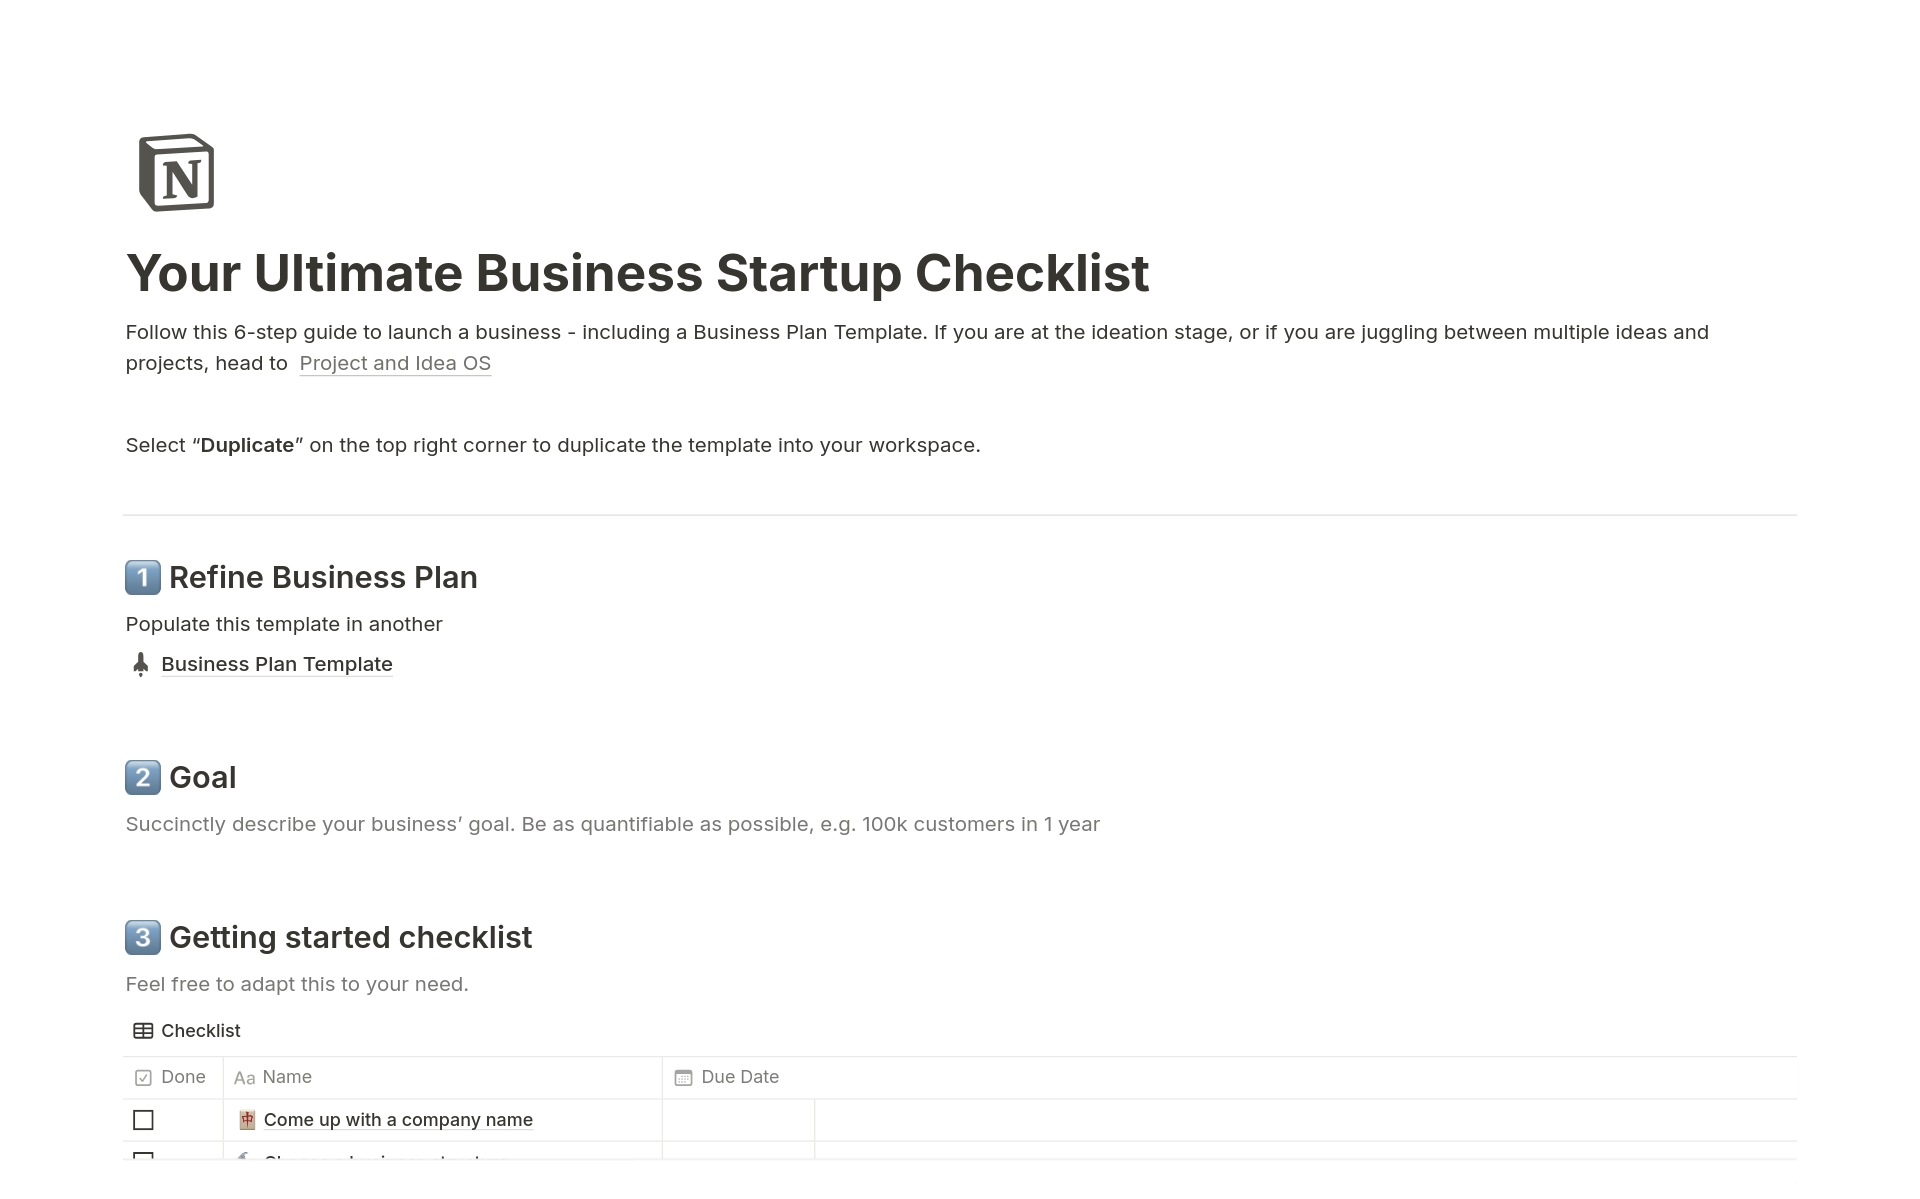 Vista previa de una plantilla para Your Ultimate Business Startup Checklist